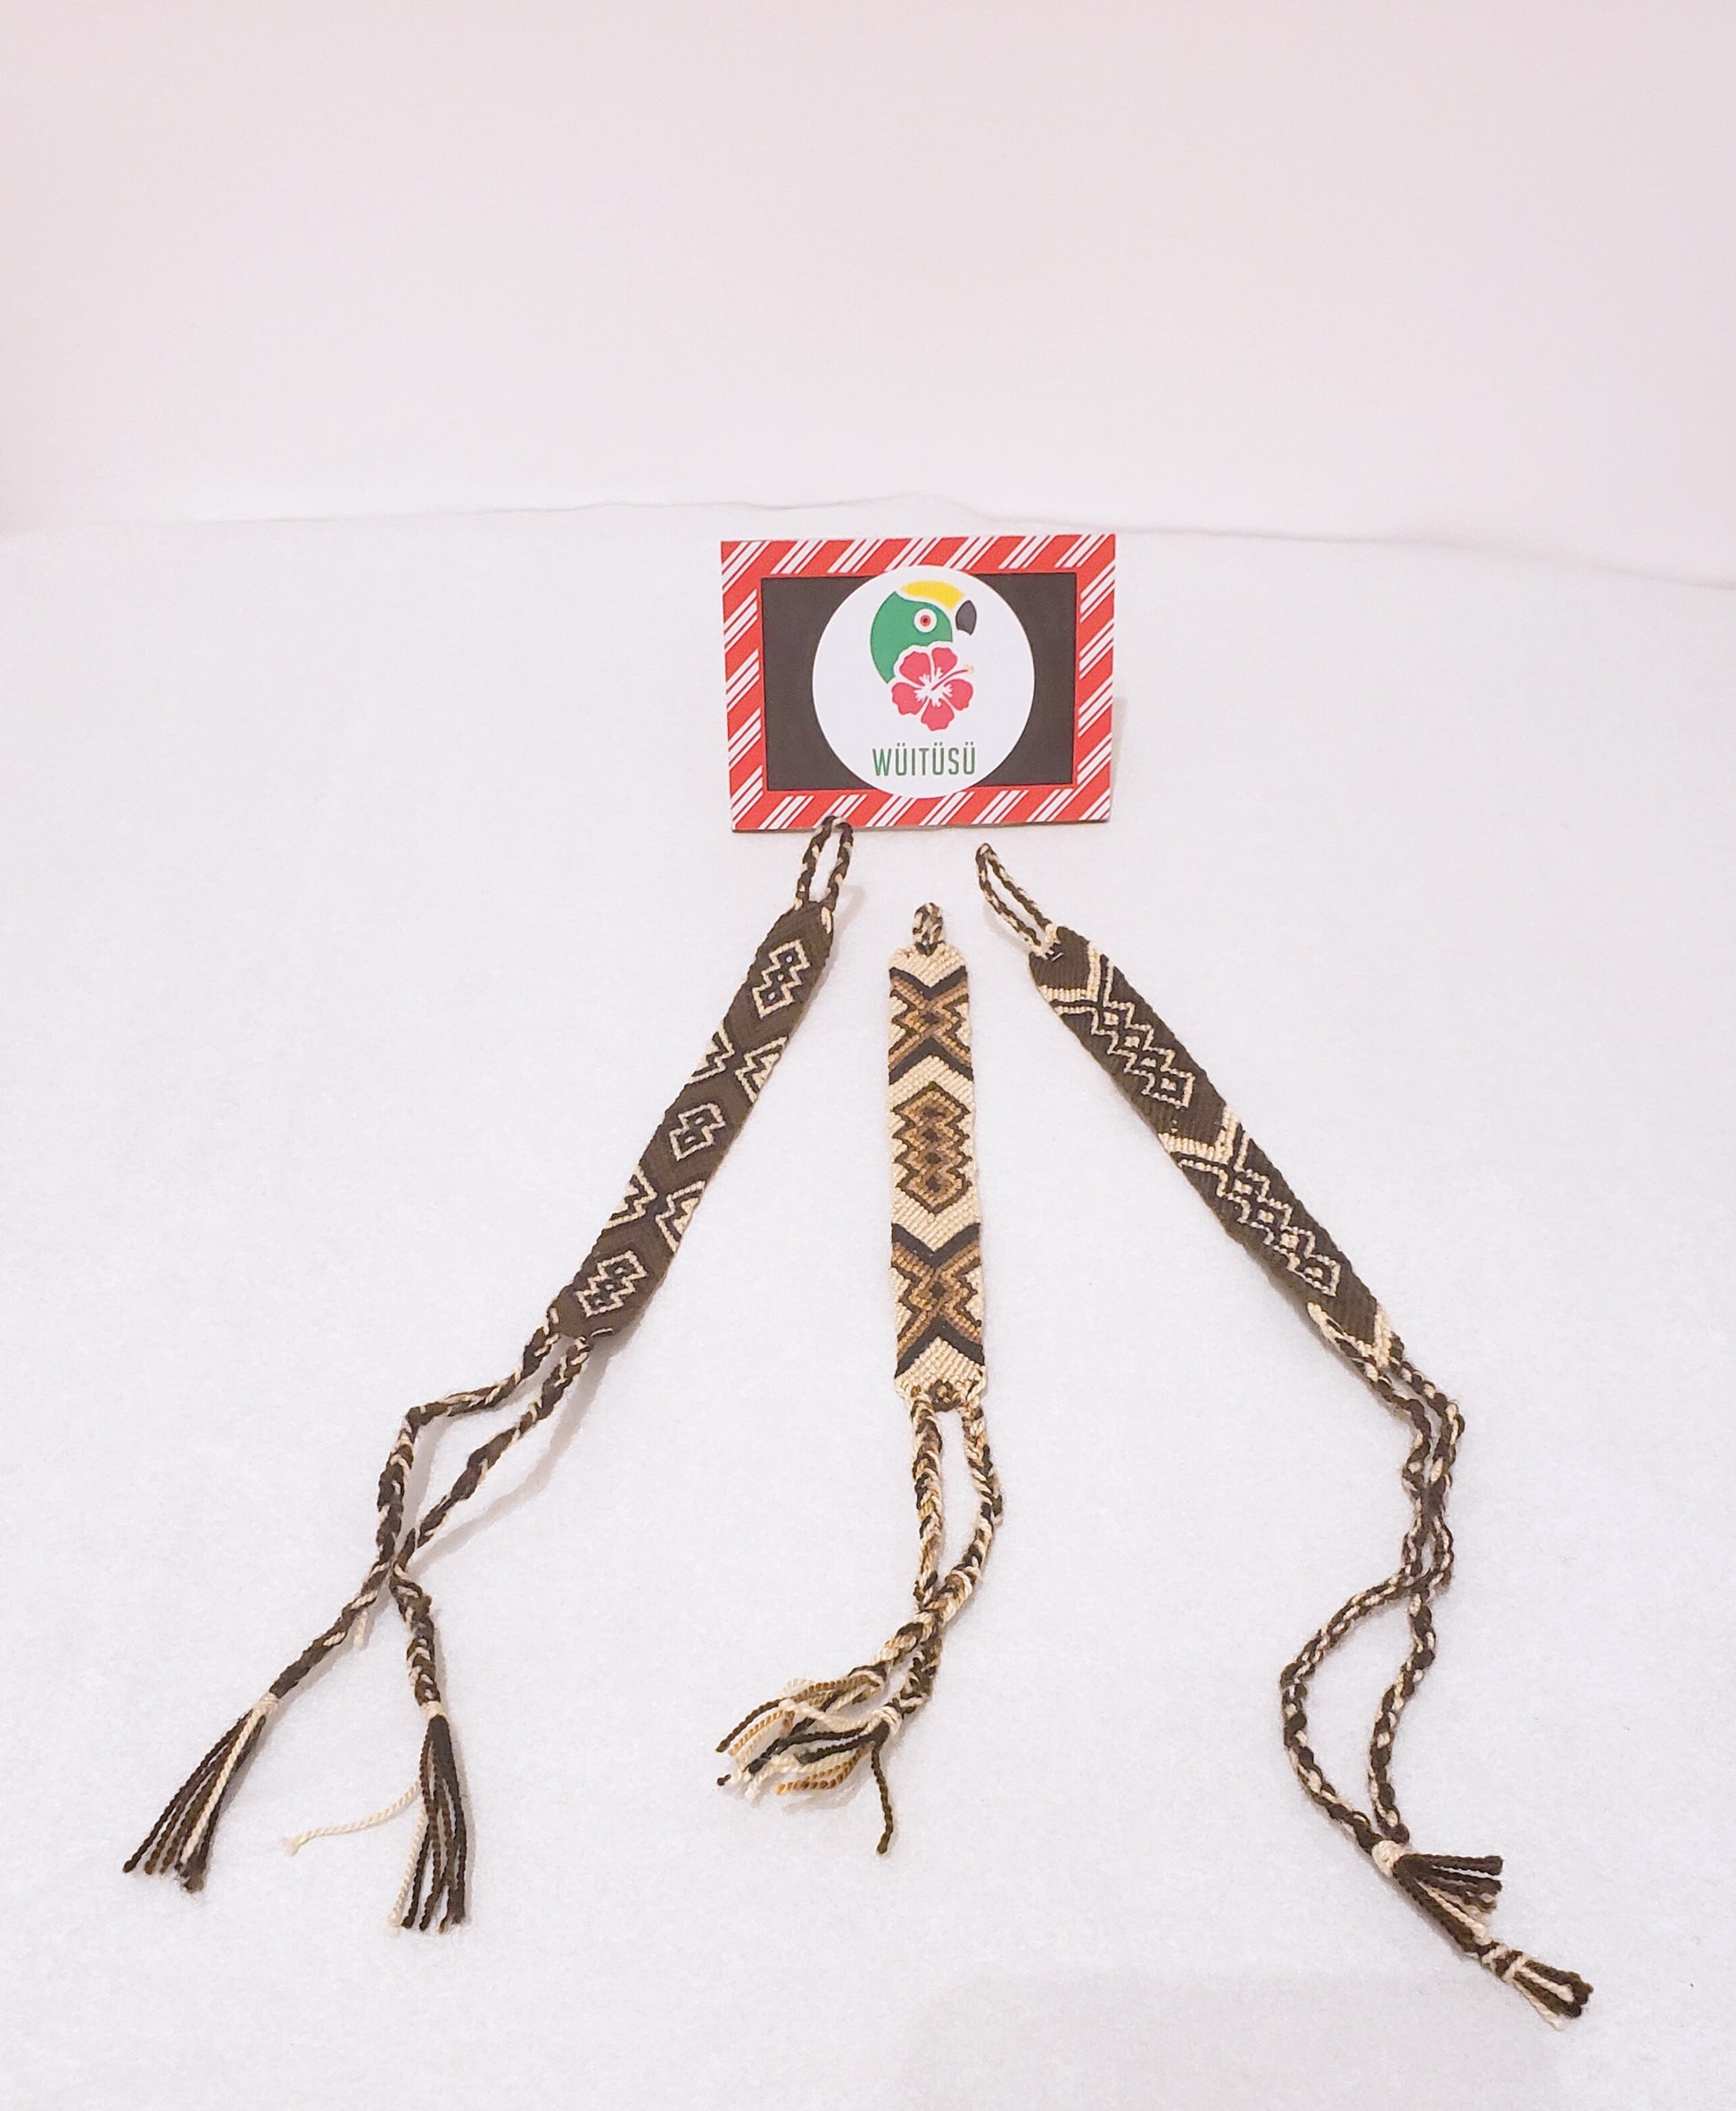 2 Pack of Three Brown Wayuu Handmade Bracelets - Wuitusu